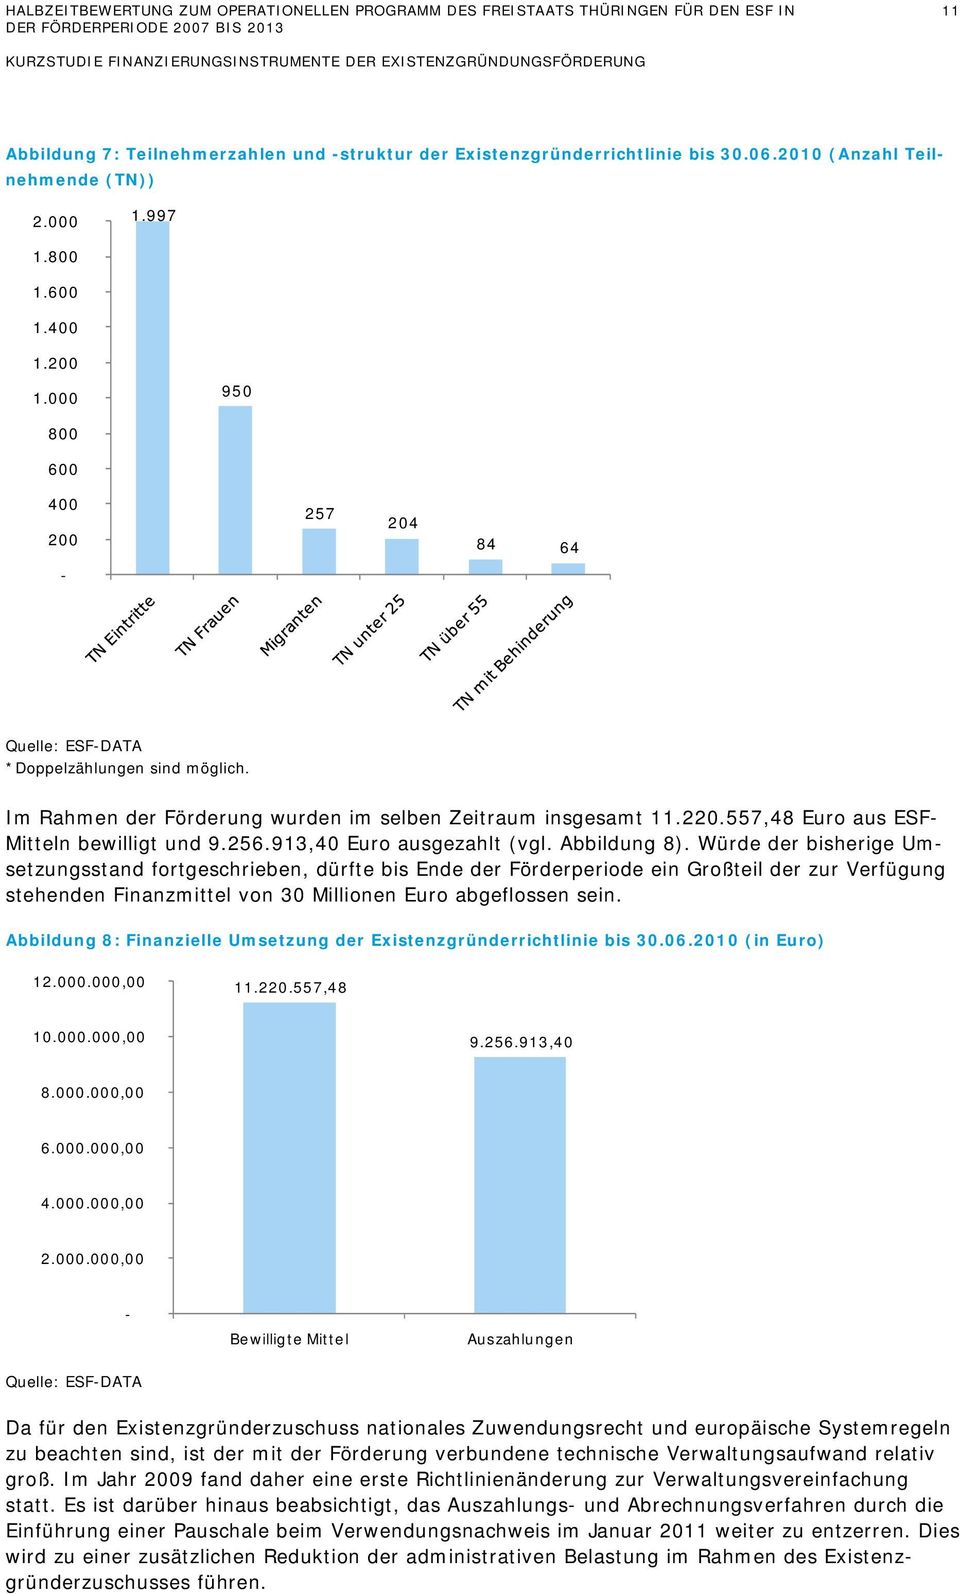 Im Rahmen der Förderung wurden im selben Zeitraum insgesamt 11.220.557,48 Euro aus ESF- Mitteln bewilligt und 9.256.913,40 Euro ausgezahlt (vgl. Abbildung 8).